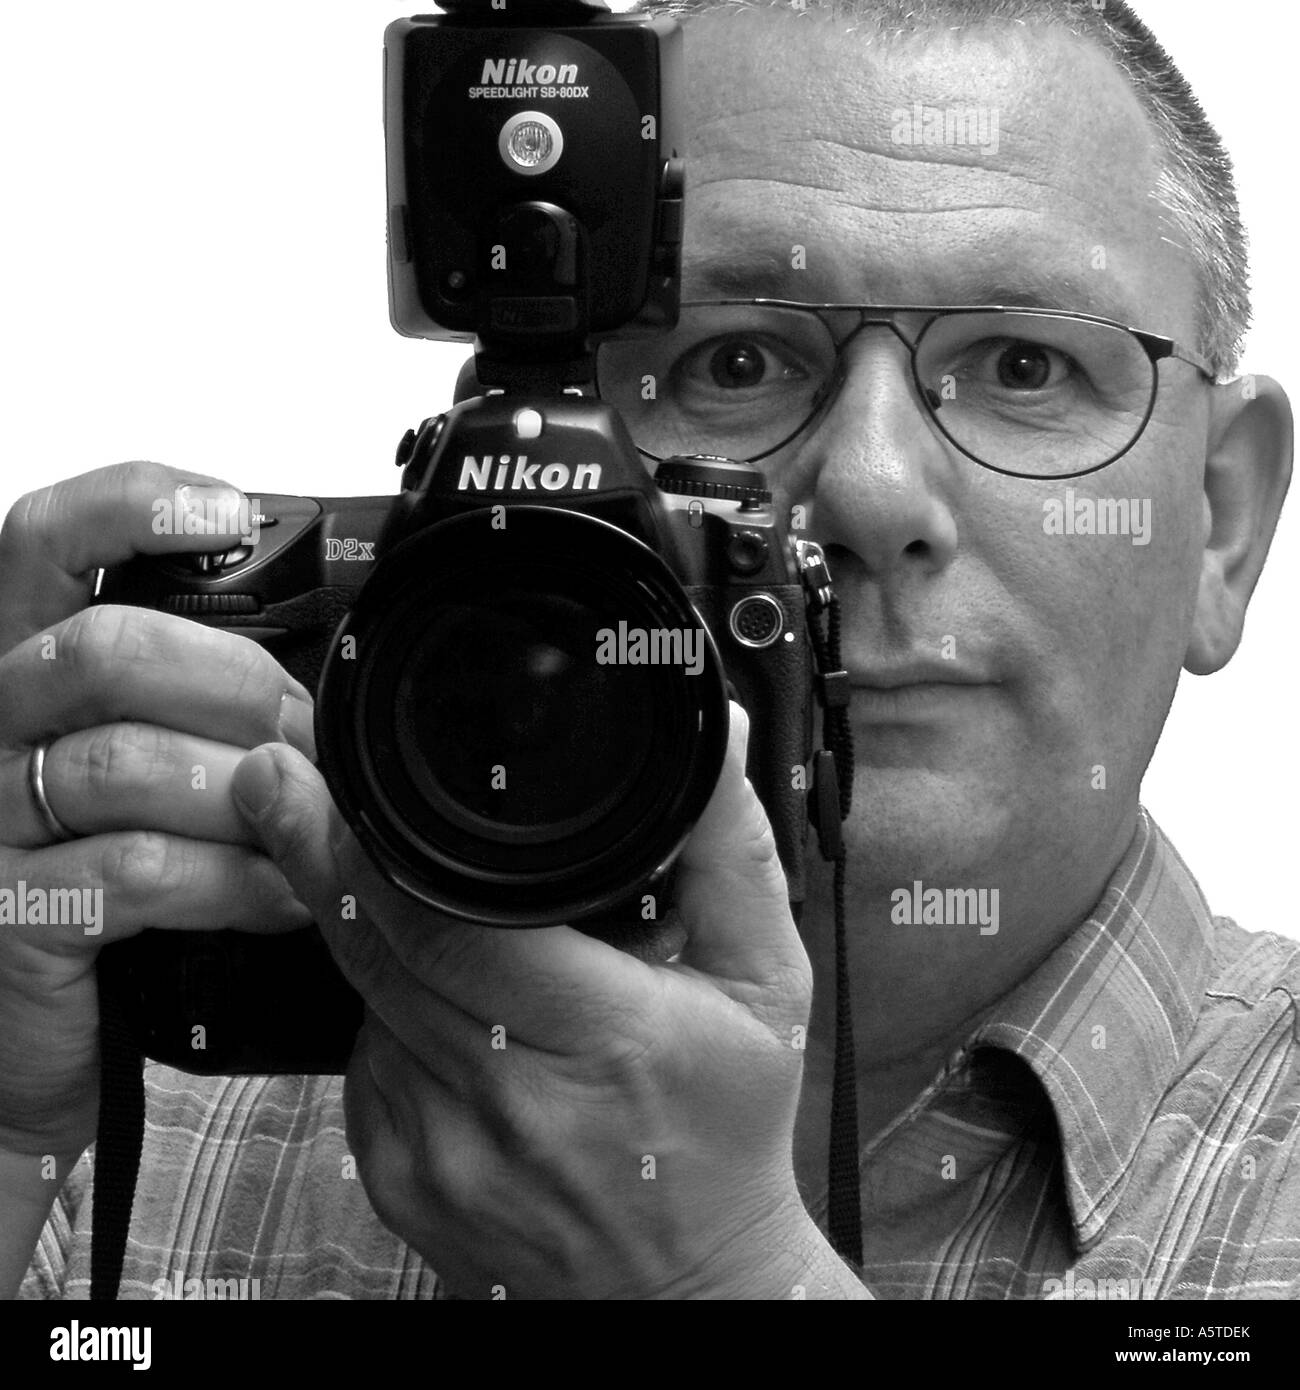 L'homme avec l'appareil photo nikon d2x Banque D'Images